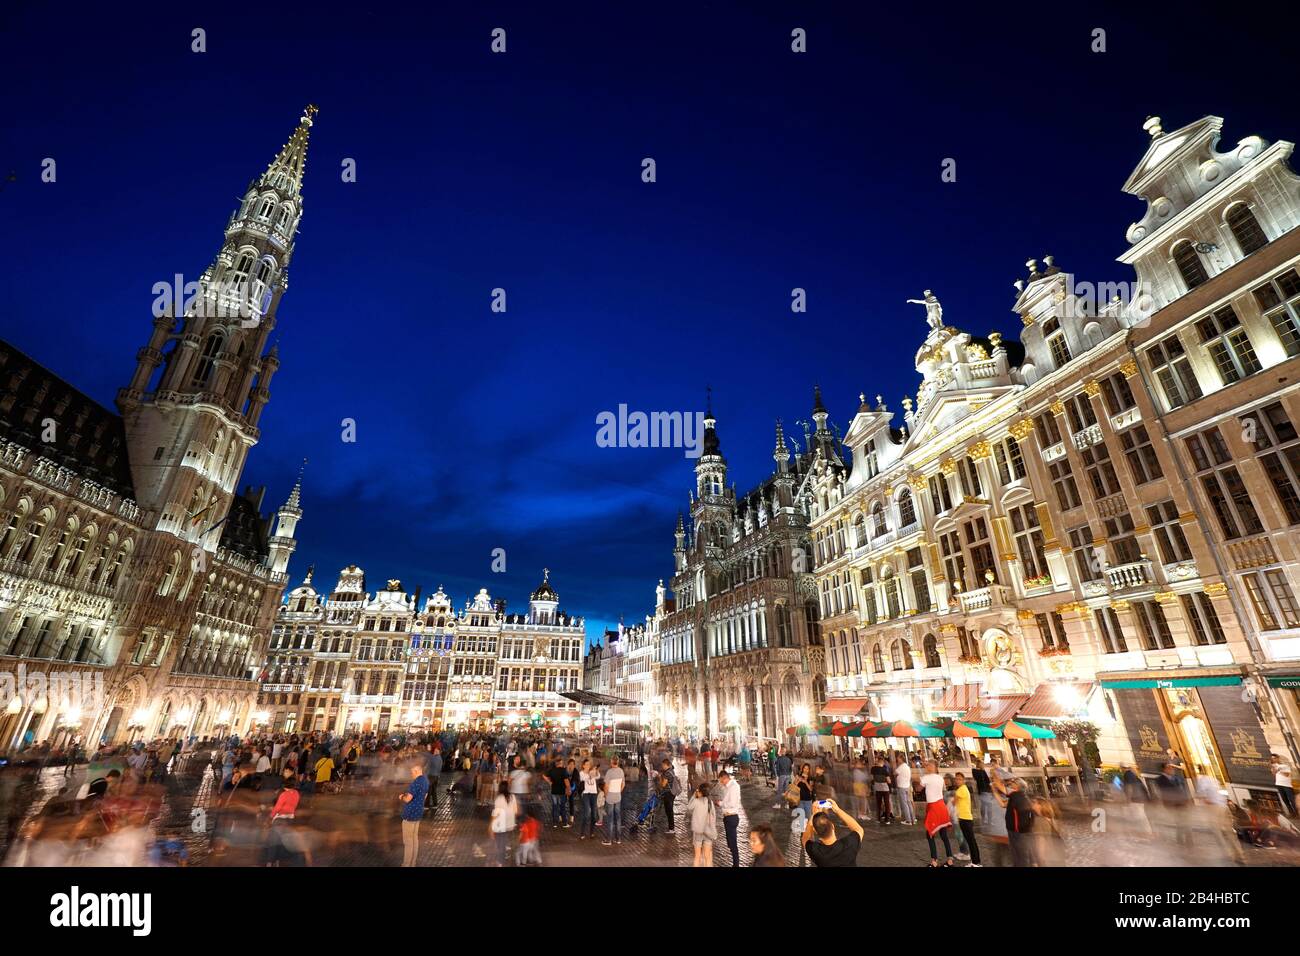 Europa, Belgien, Brüssel, Altstadt, Grand Place, Grote Markt, Historische Gebäude, Rathaus, Touristen, Abend, beleuchtet Stockfoto